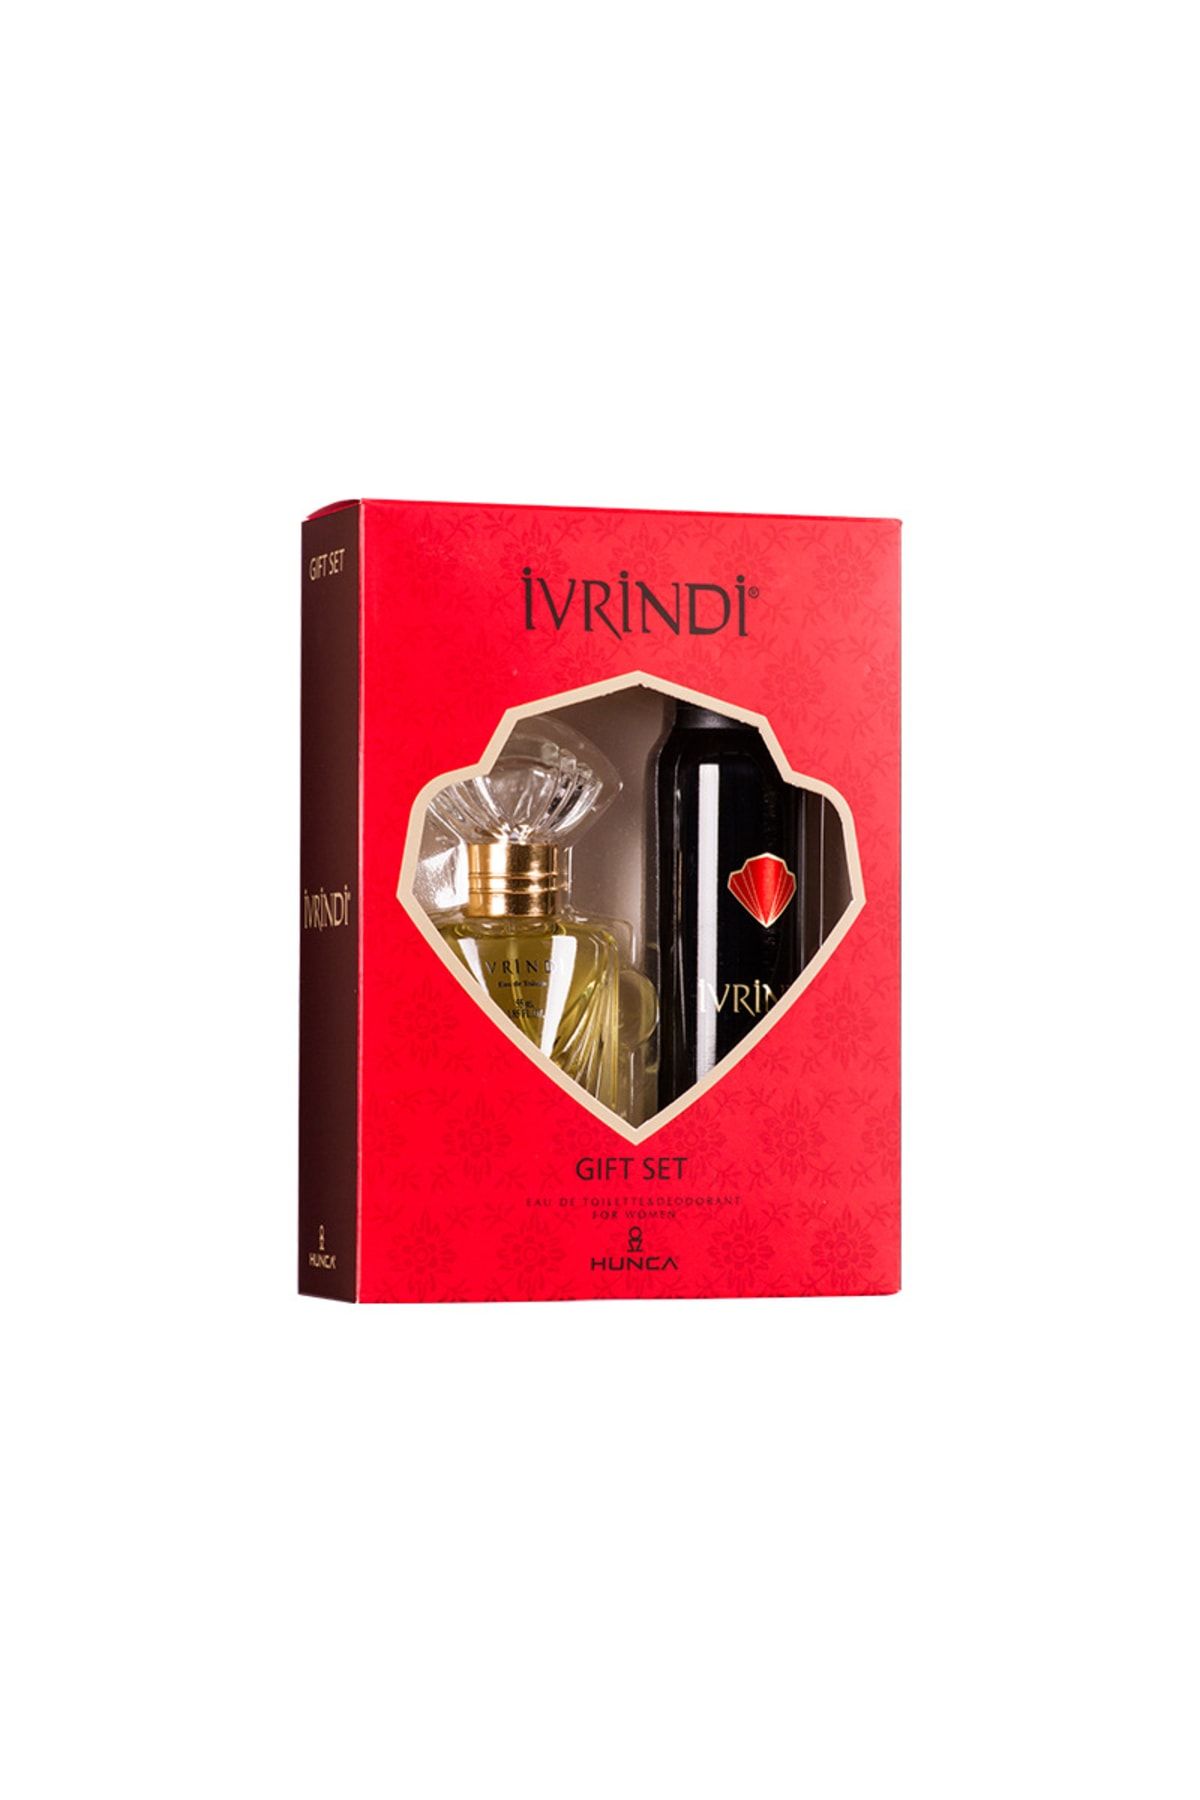 Ivrindi Gift Set For Women - EDT 55 ml + Deodorant 150 ml